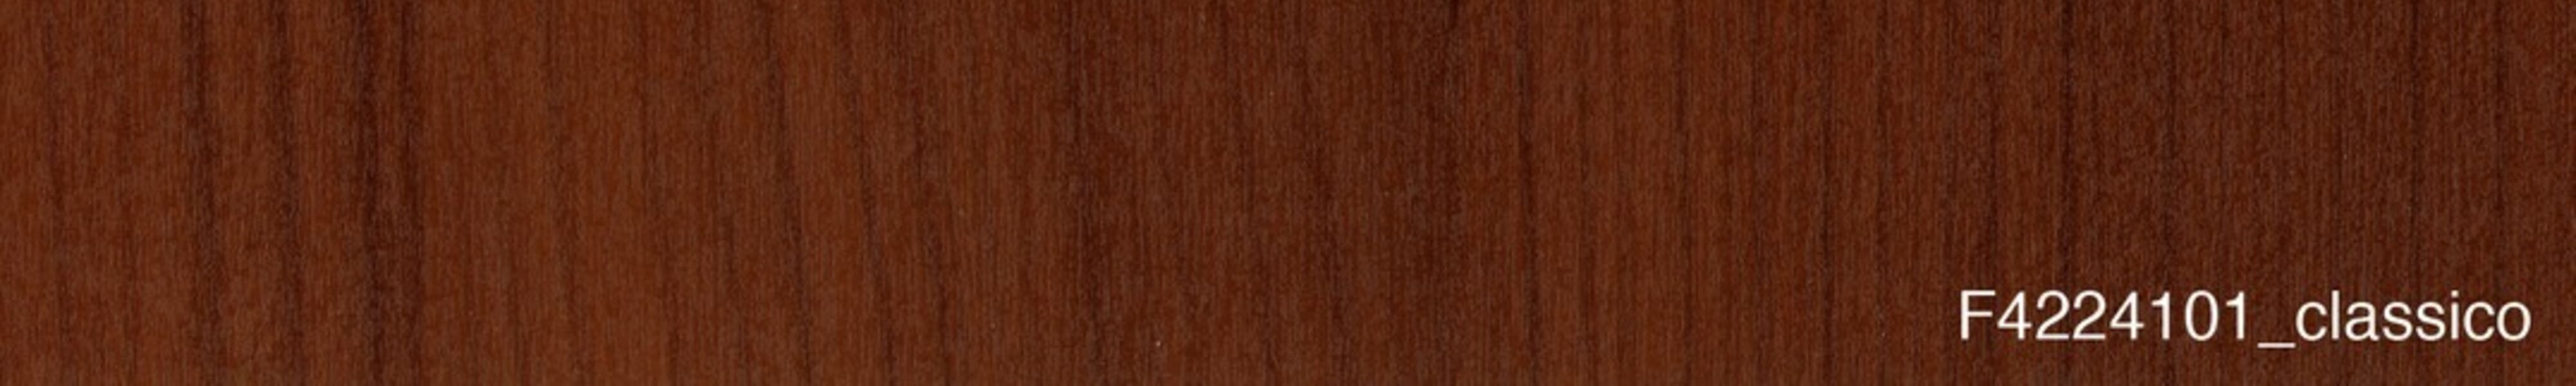 skai® classico Portofino maron           0,40 1420